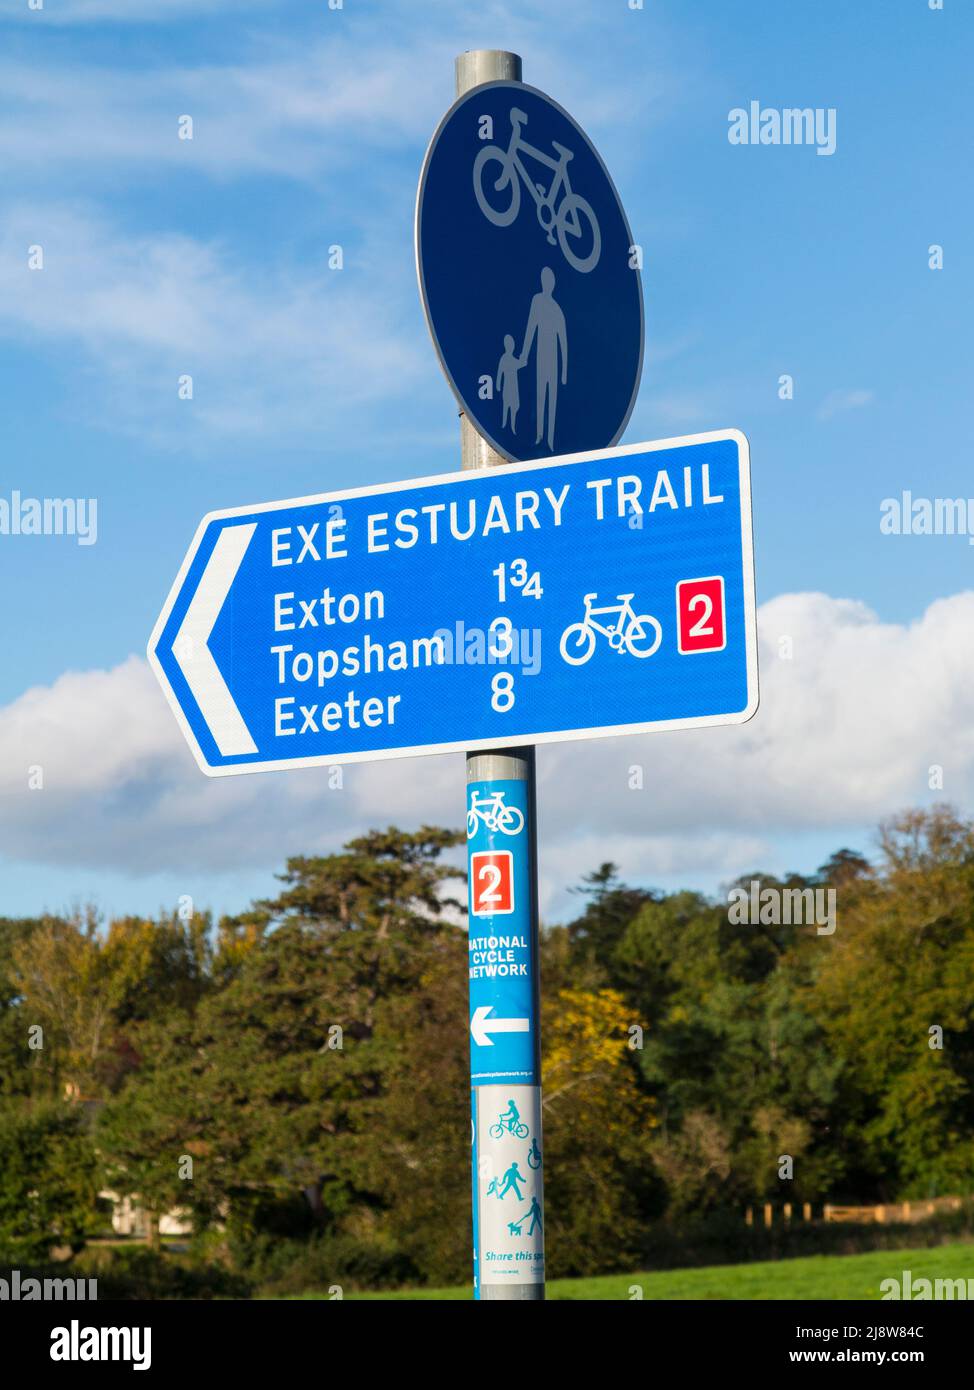 Exe Estuary carril bici cerca de Topsham, Devon, Reino Unido Foto de stock